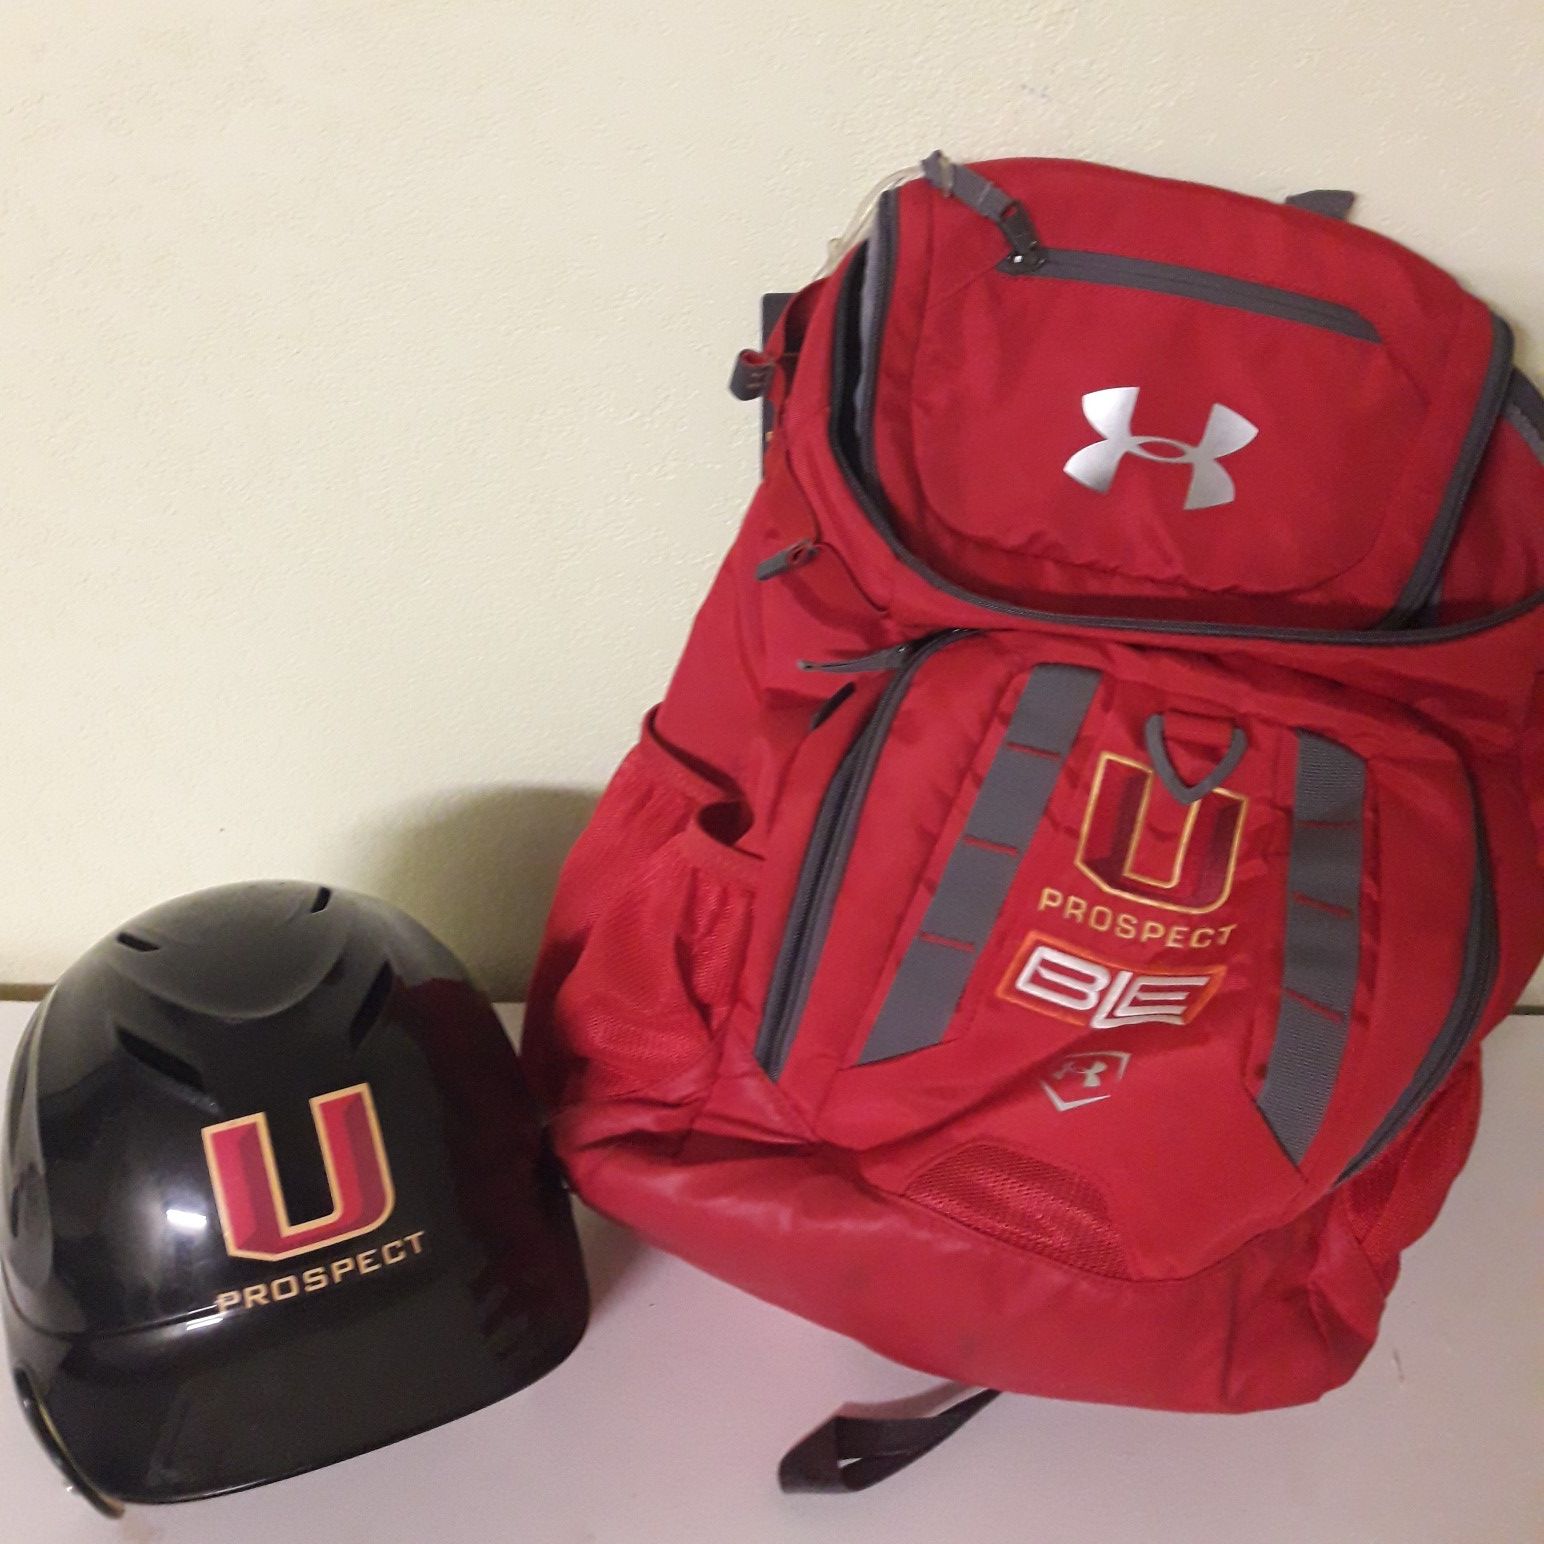 Under Armor Prospect Baseball Backpack and Helmet